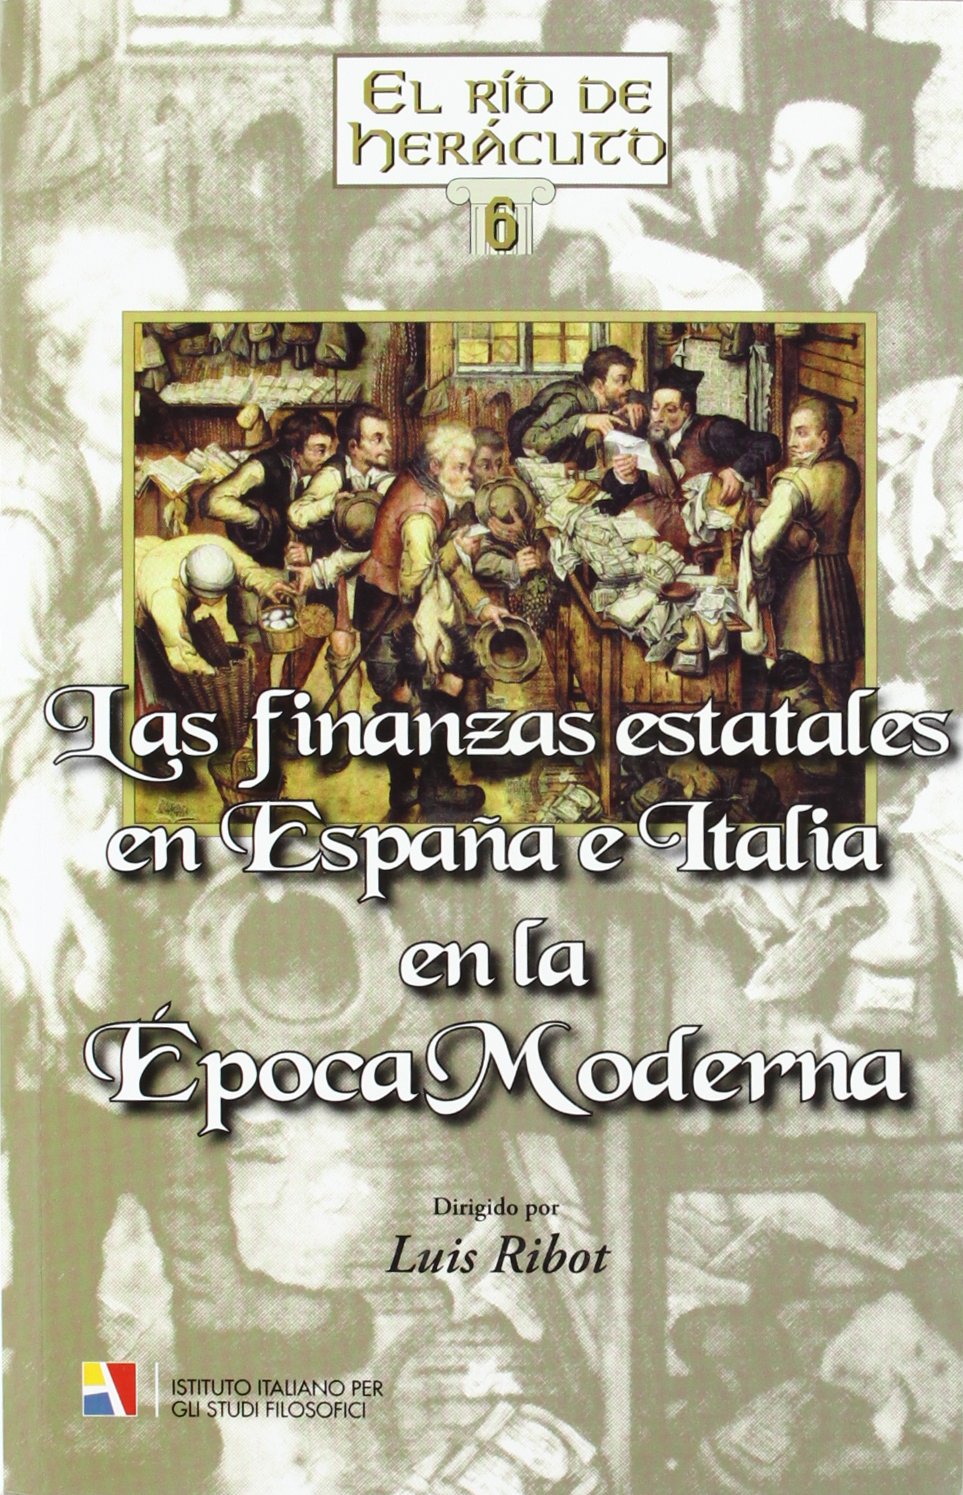 Imagen de portada del libro Las finanzas estatales en España e Italia en la Época Moderna